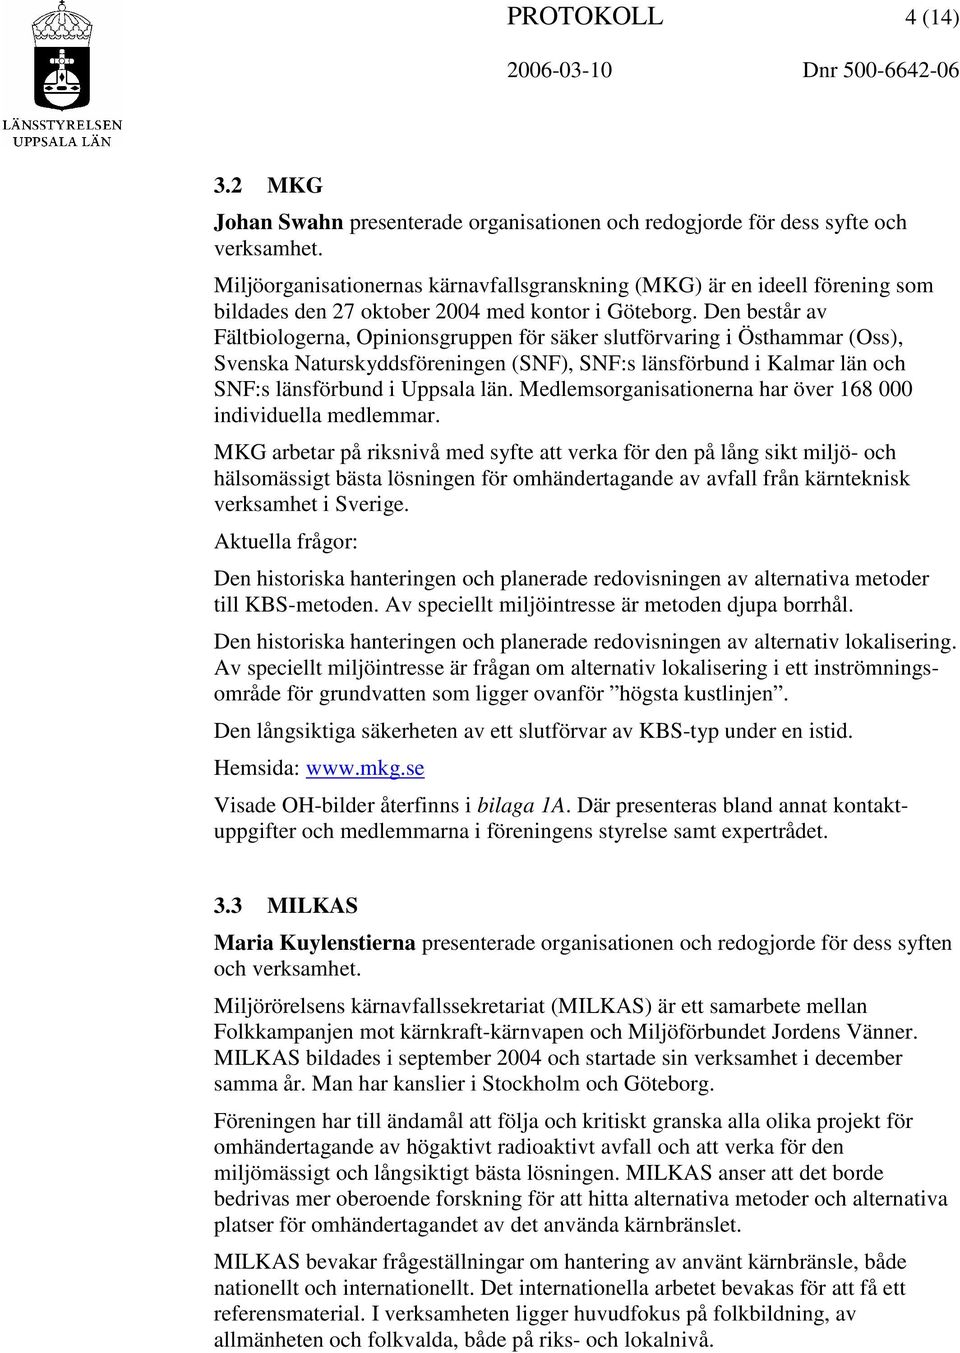 Den består av Fältbiologerna, Opinionsgruppen för säker slutförvaring i Östhammar (Oss), Svenska Naturskyddsföreningen (SNF), SNF:s länsförbund i Kalmar län och SNF:s länsförbund i Uppsala län.